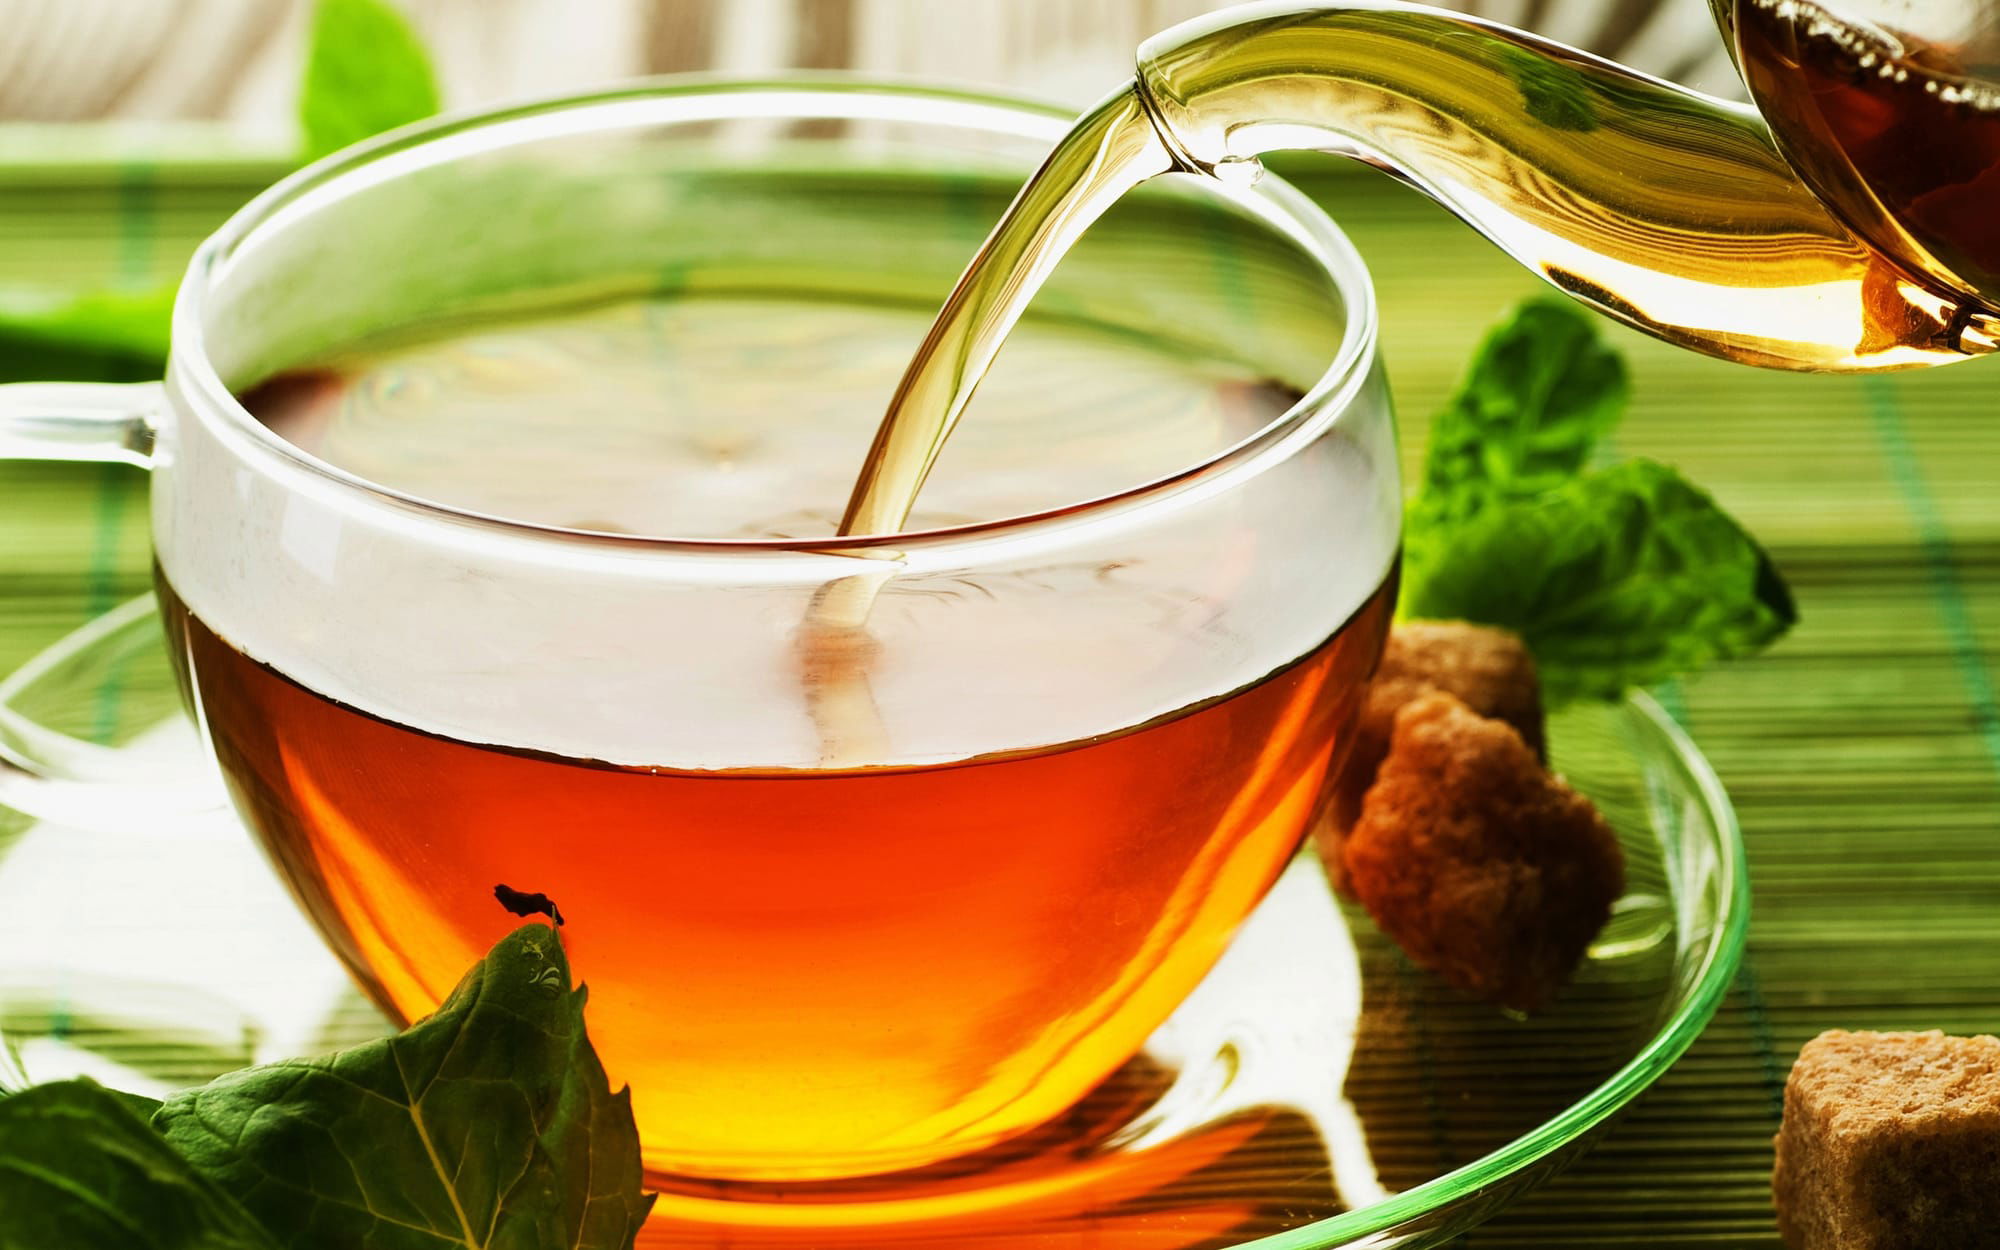 دراسة: شرب كوبين فقط من شاي صيني يوميا قد يساعد على حرق الدهون أثناء النوم